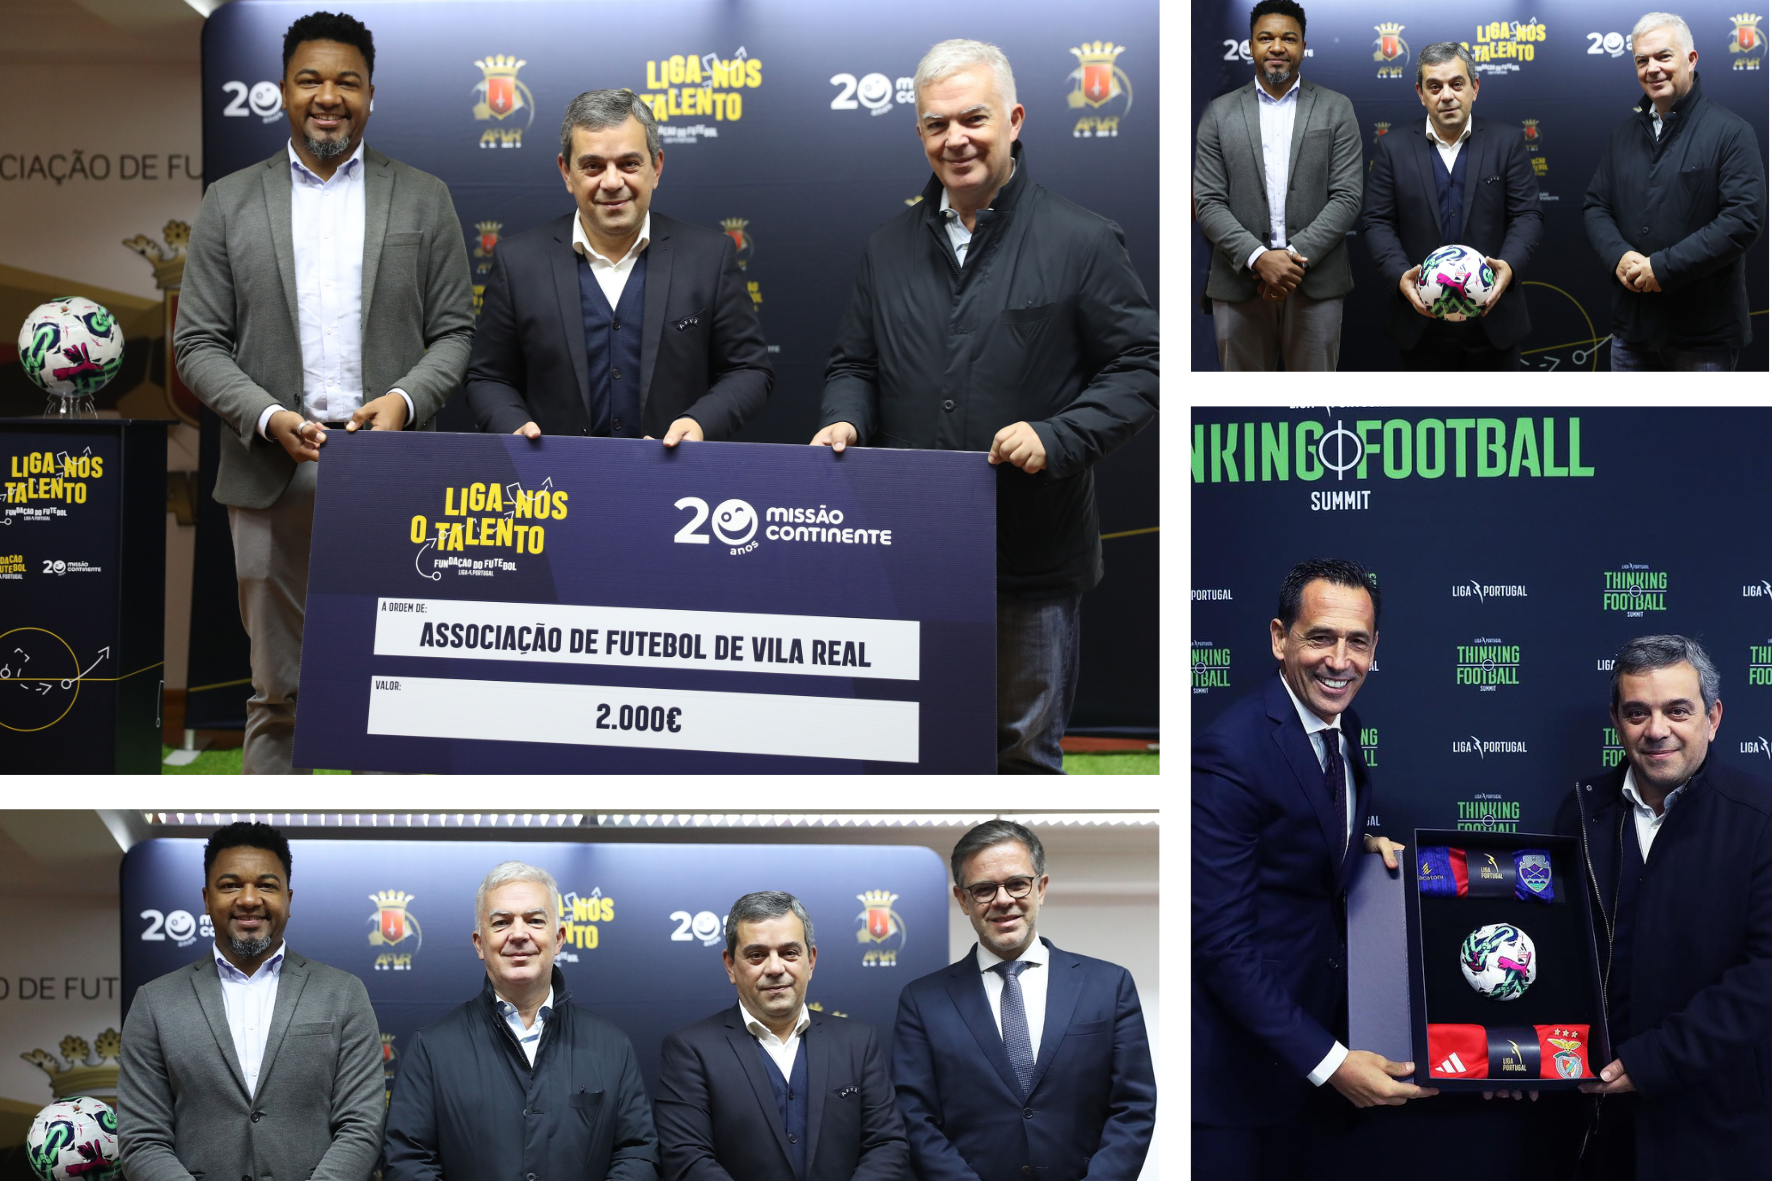 Liga Portugal e Missão Continente | AFVR reconhecida pela Fundação do Futebol